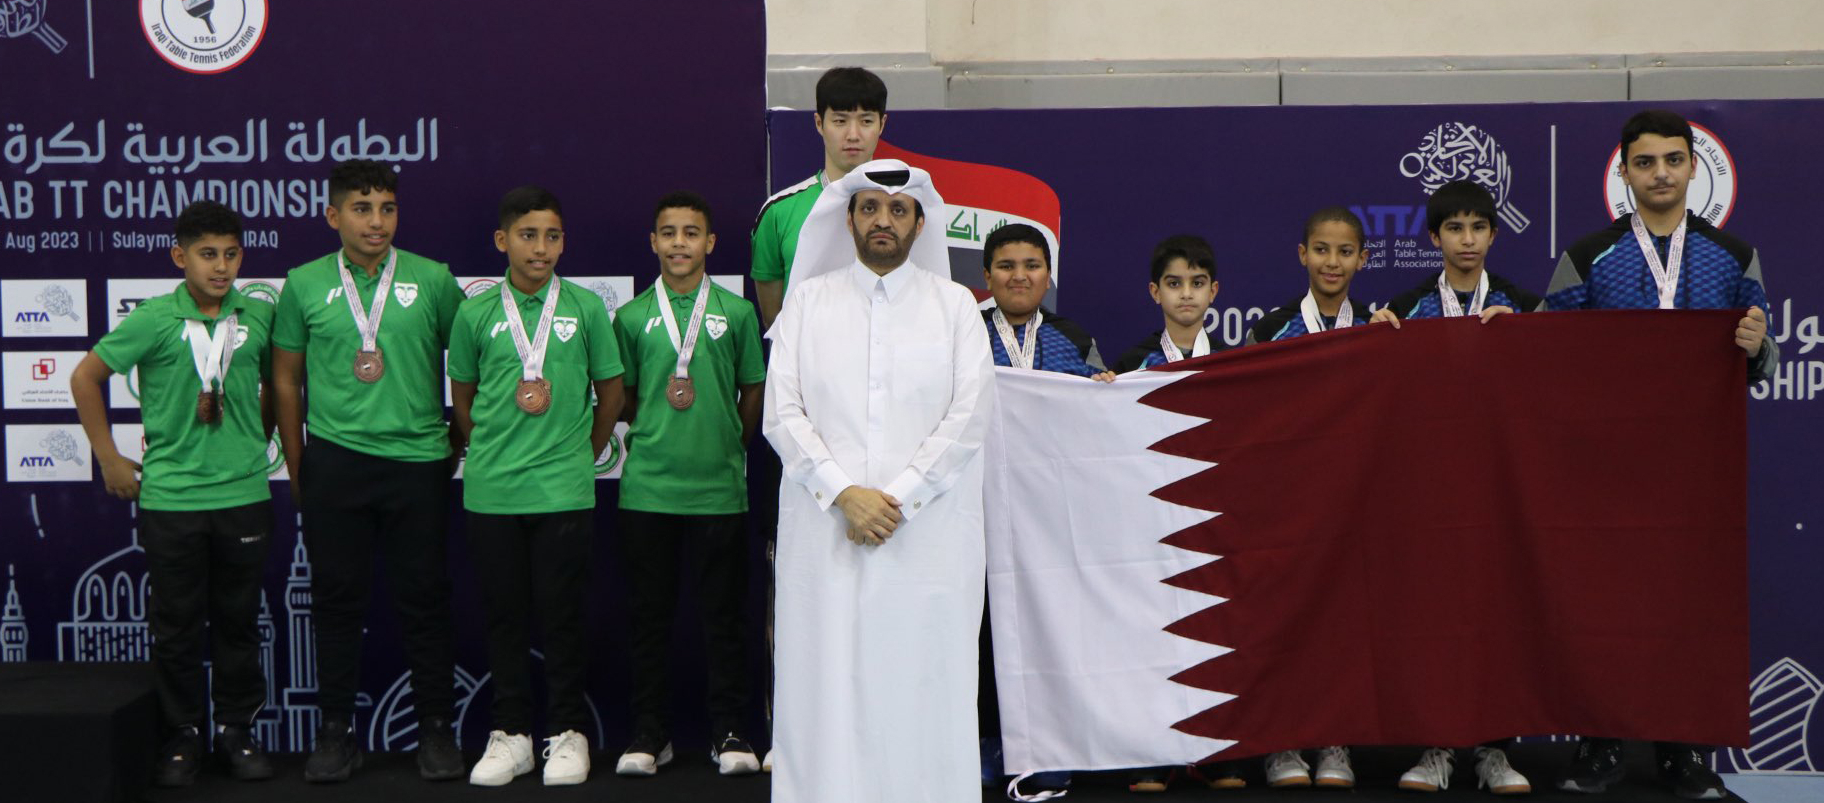 الأدعم لكرة الطاولة يحقق 3 ميداليات في البطولة العربية